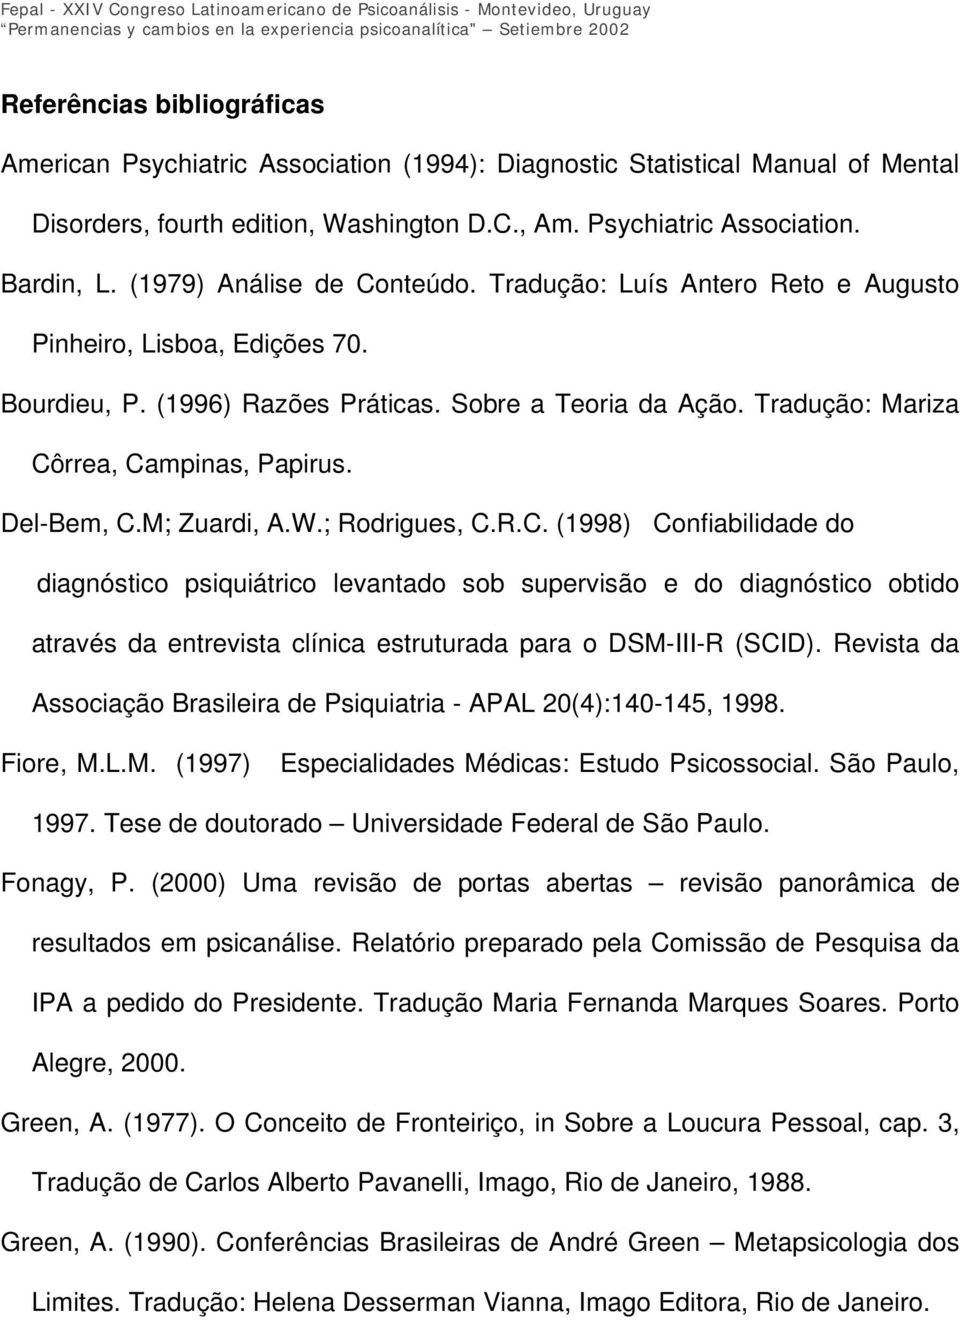 Del-Bem, C.M; Zuardi, A.W.; Rodrigues, C.R.C. (1998) Confiabilidade do diagnóstico psiquiátrico levantado sob supervisão e do diagnóstico obtido através da entrevista clínica estruturada para o DSM-III-R (SCID).